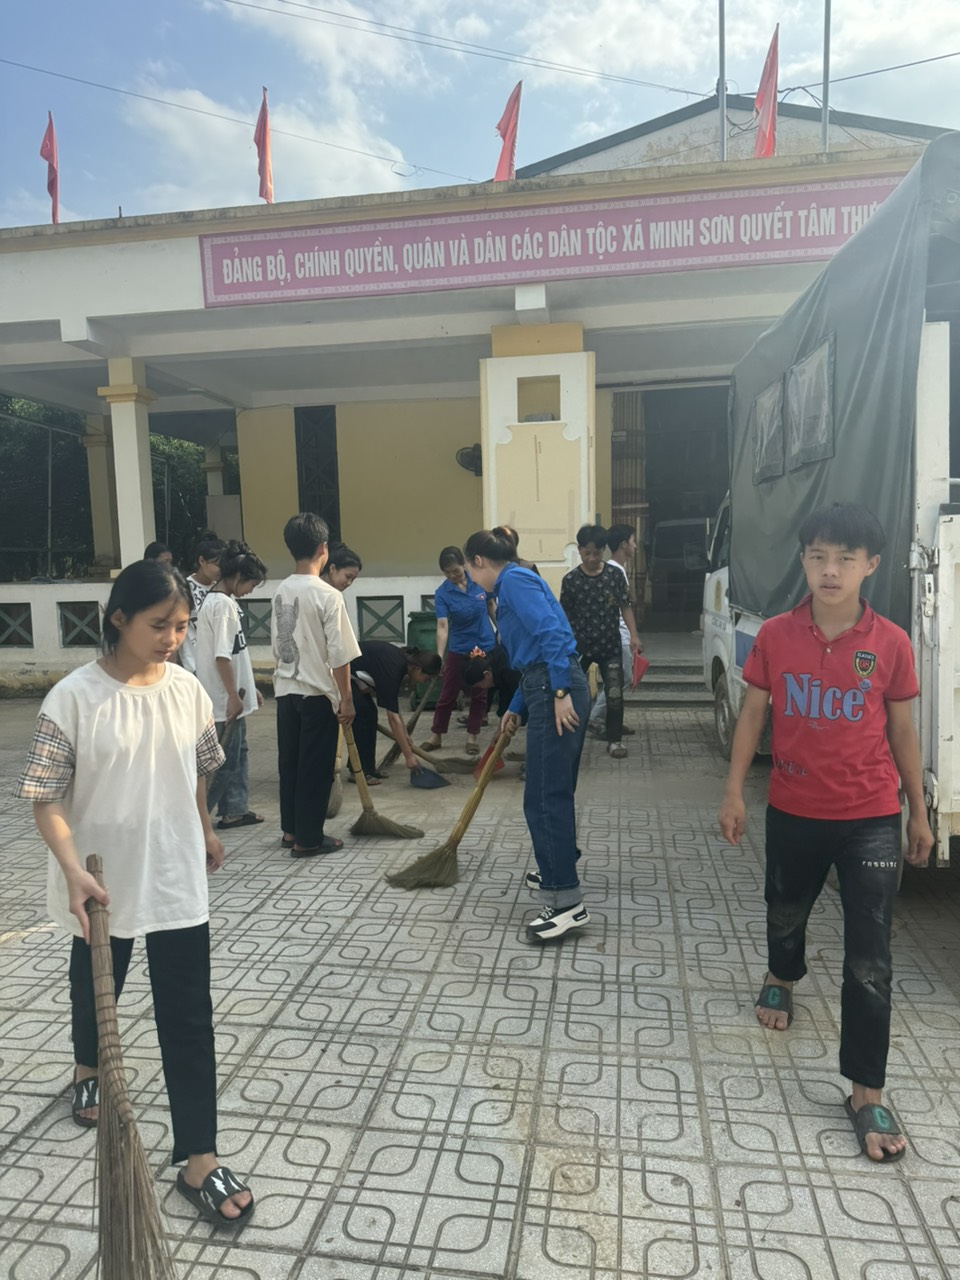 Đoàn thanh niên xã Minh Sơn tổ chức ra quân tổng vệ sinh khuôn viên UBND xã